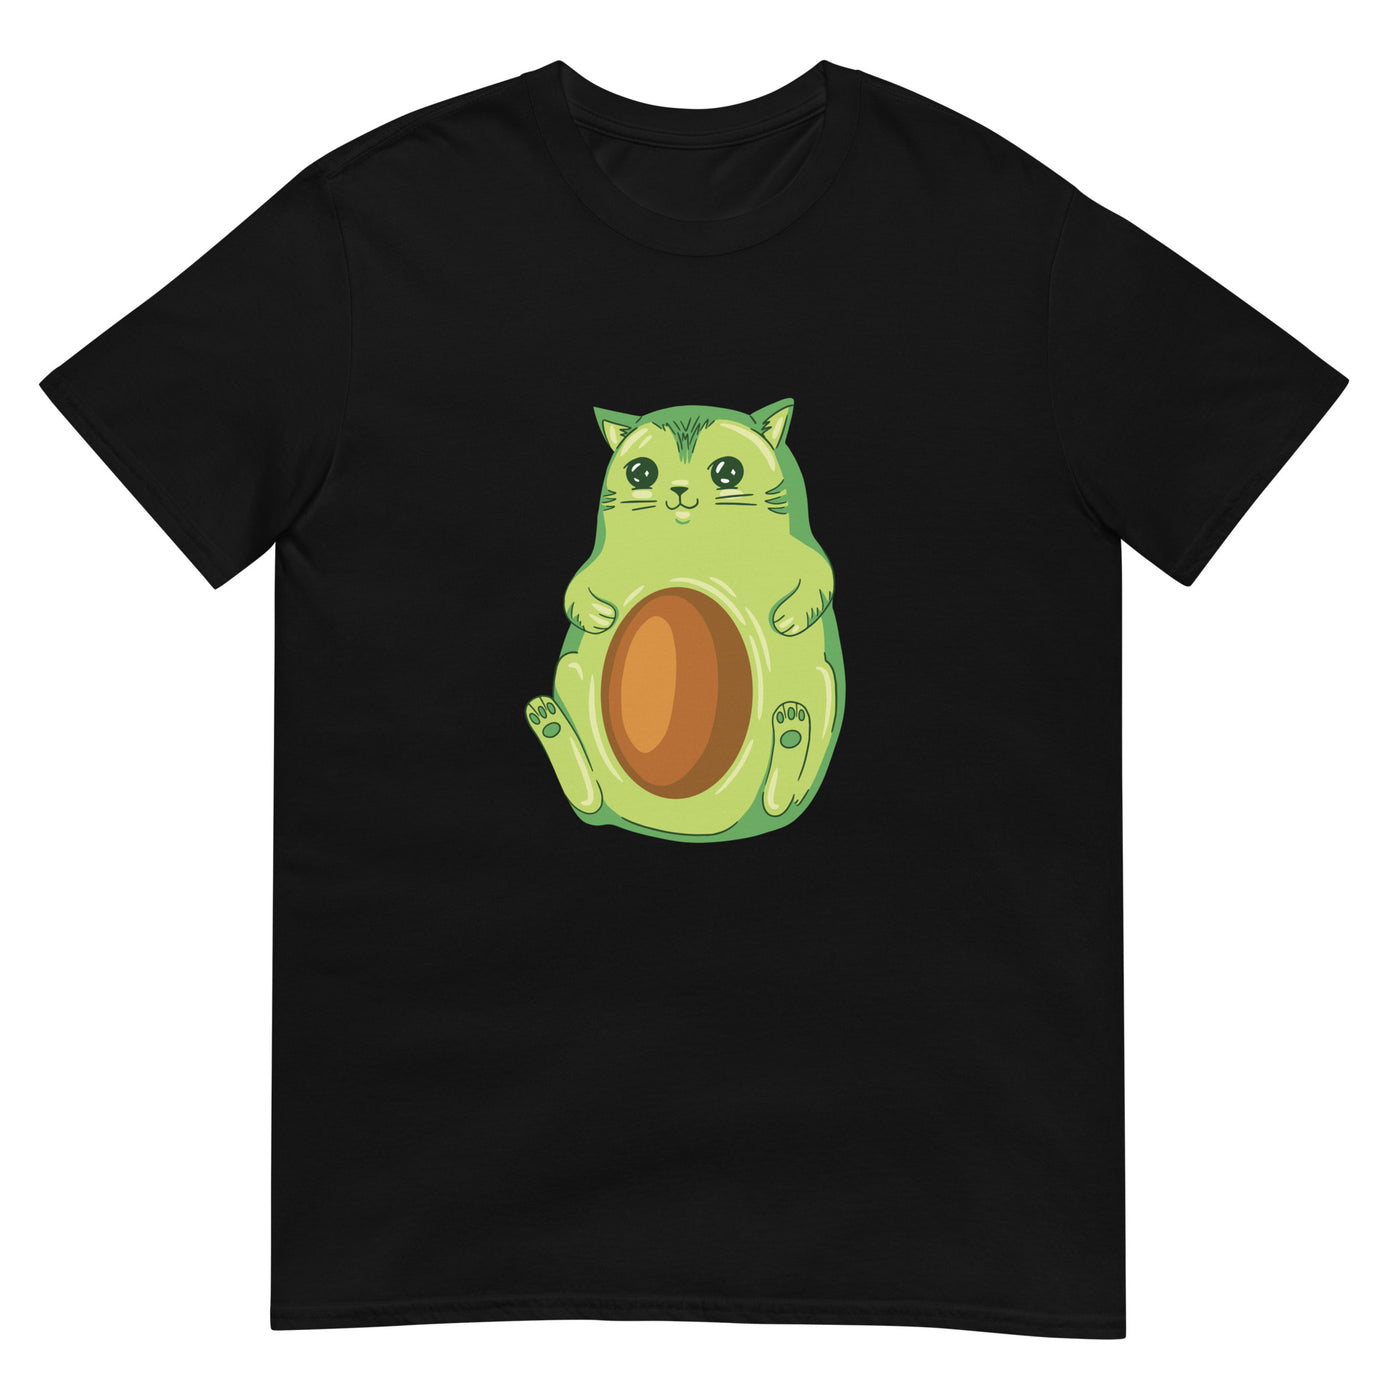 Avocado-förmige Cartoon-Katze - Herren T-Shirt Other_Niches xxx yyy zzz Black